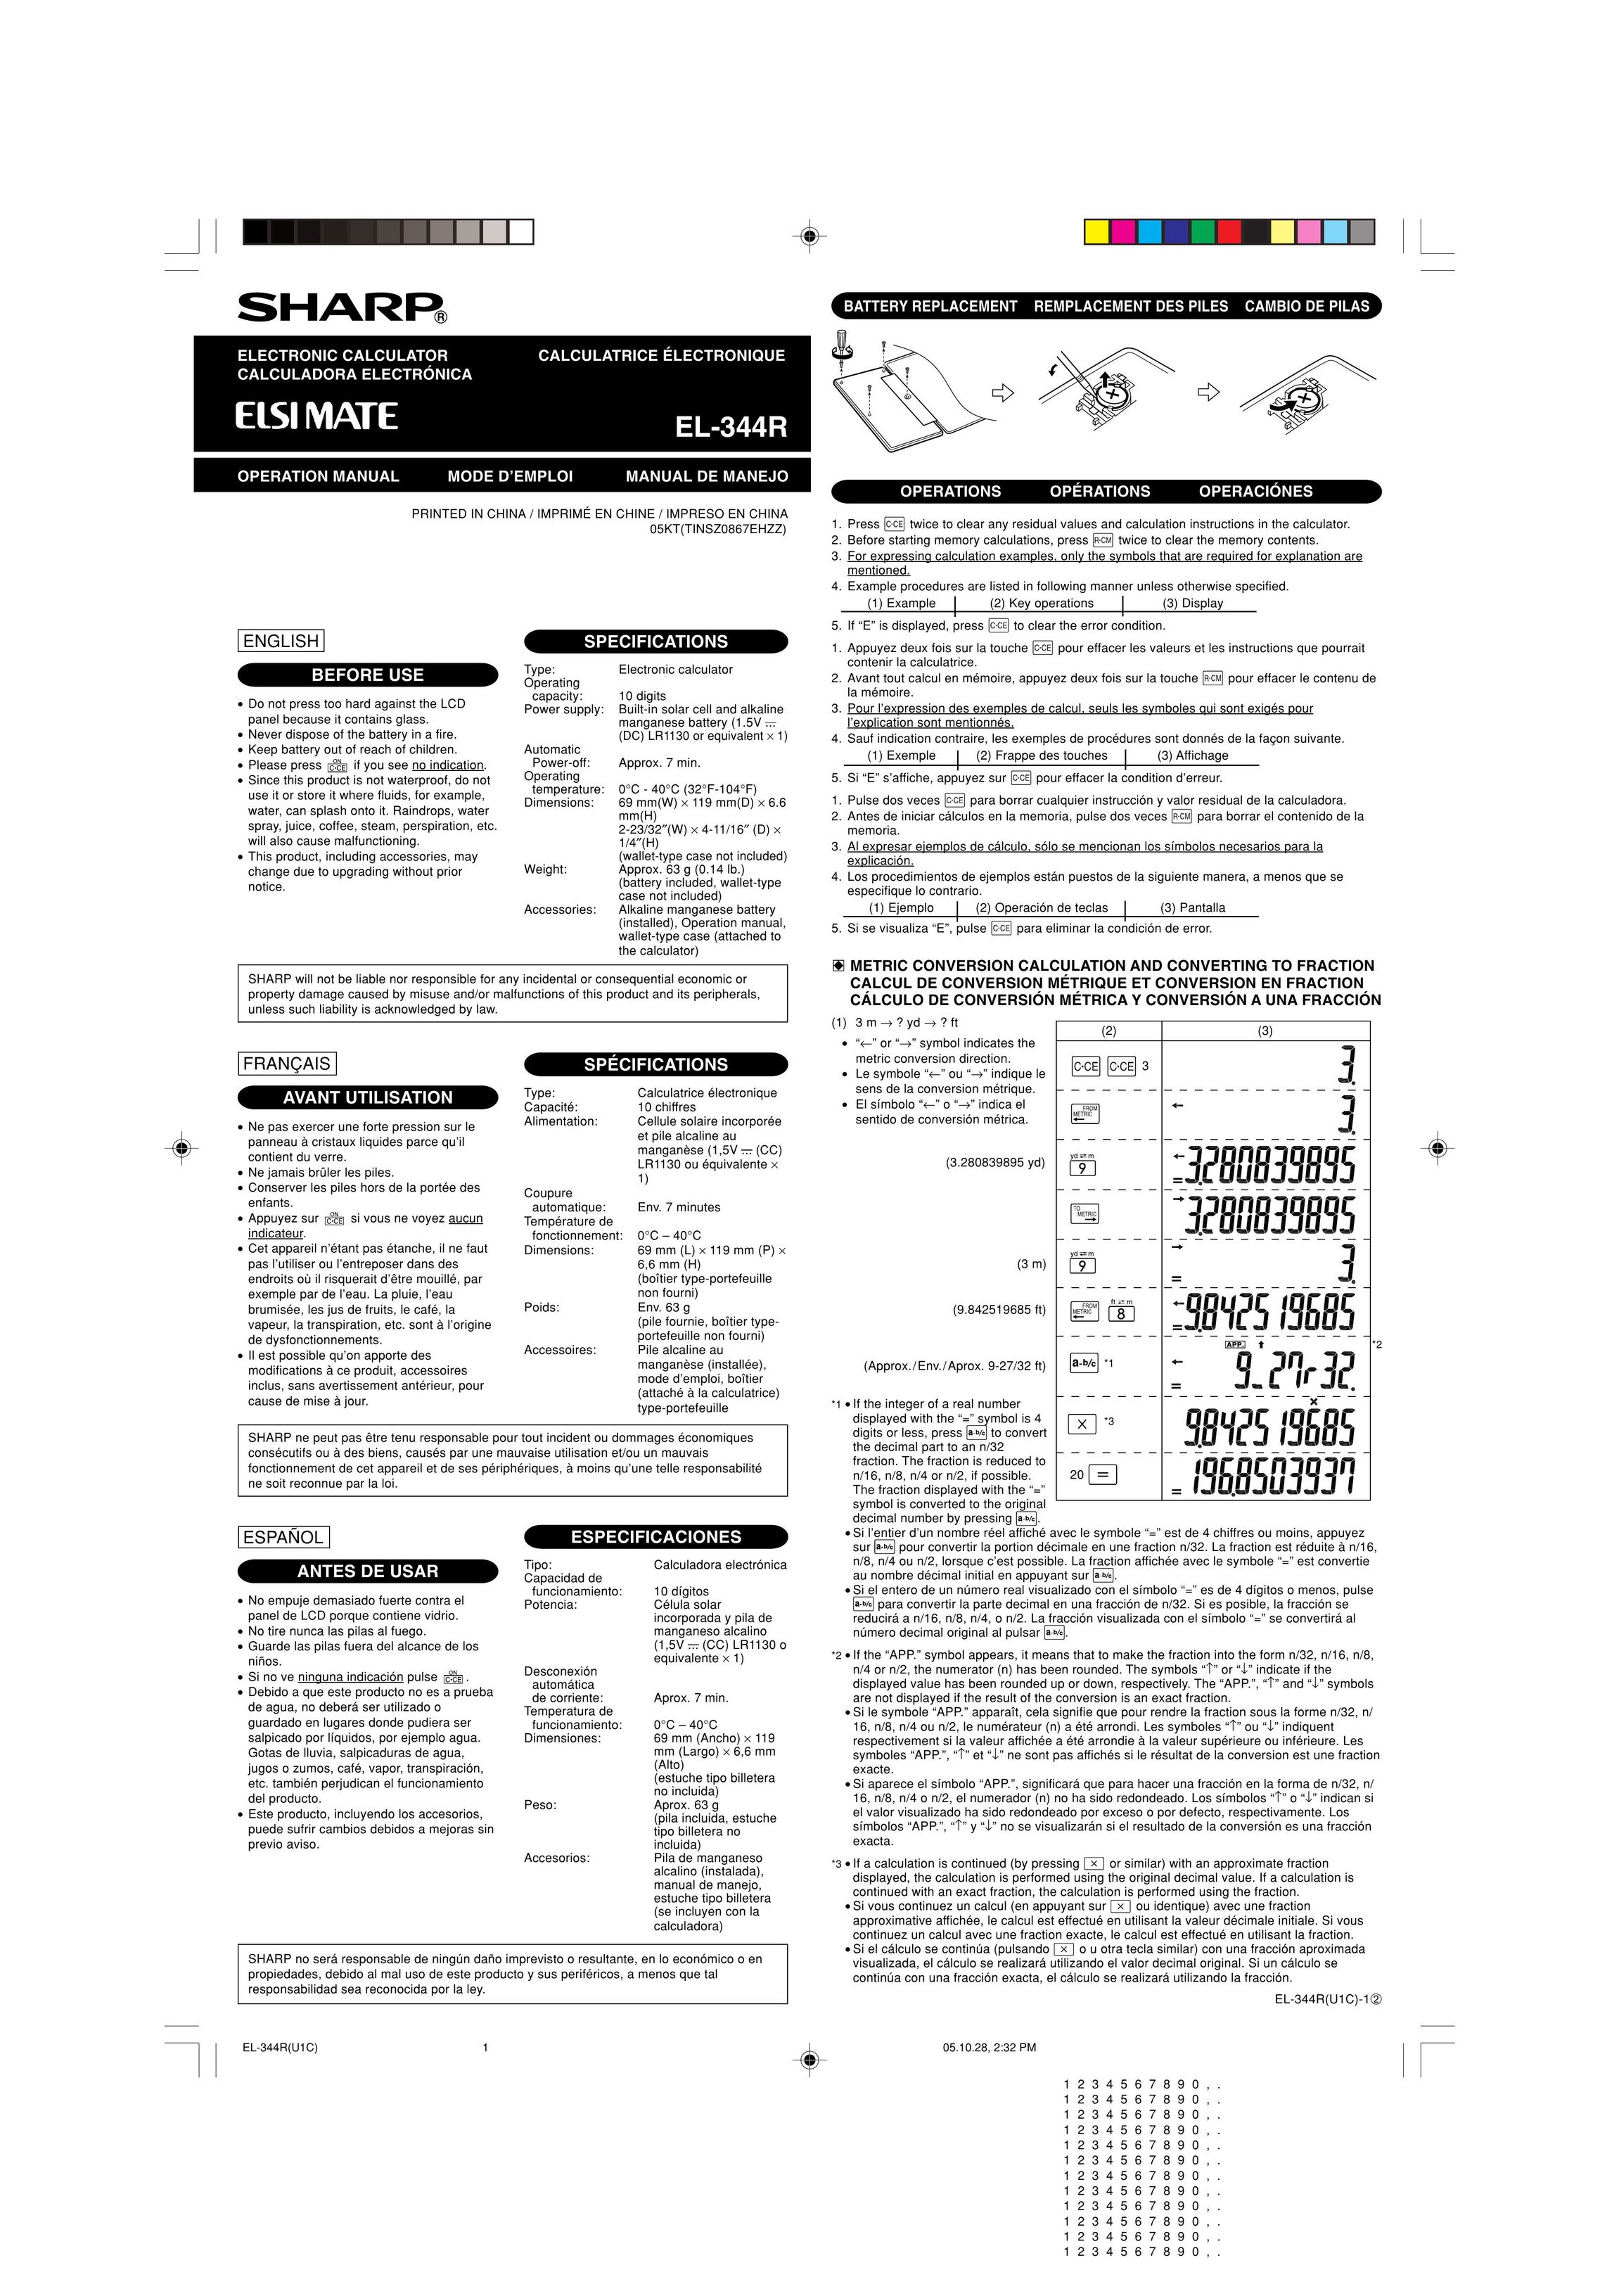 Sharp EL-344RB Calculator User Manual